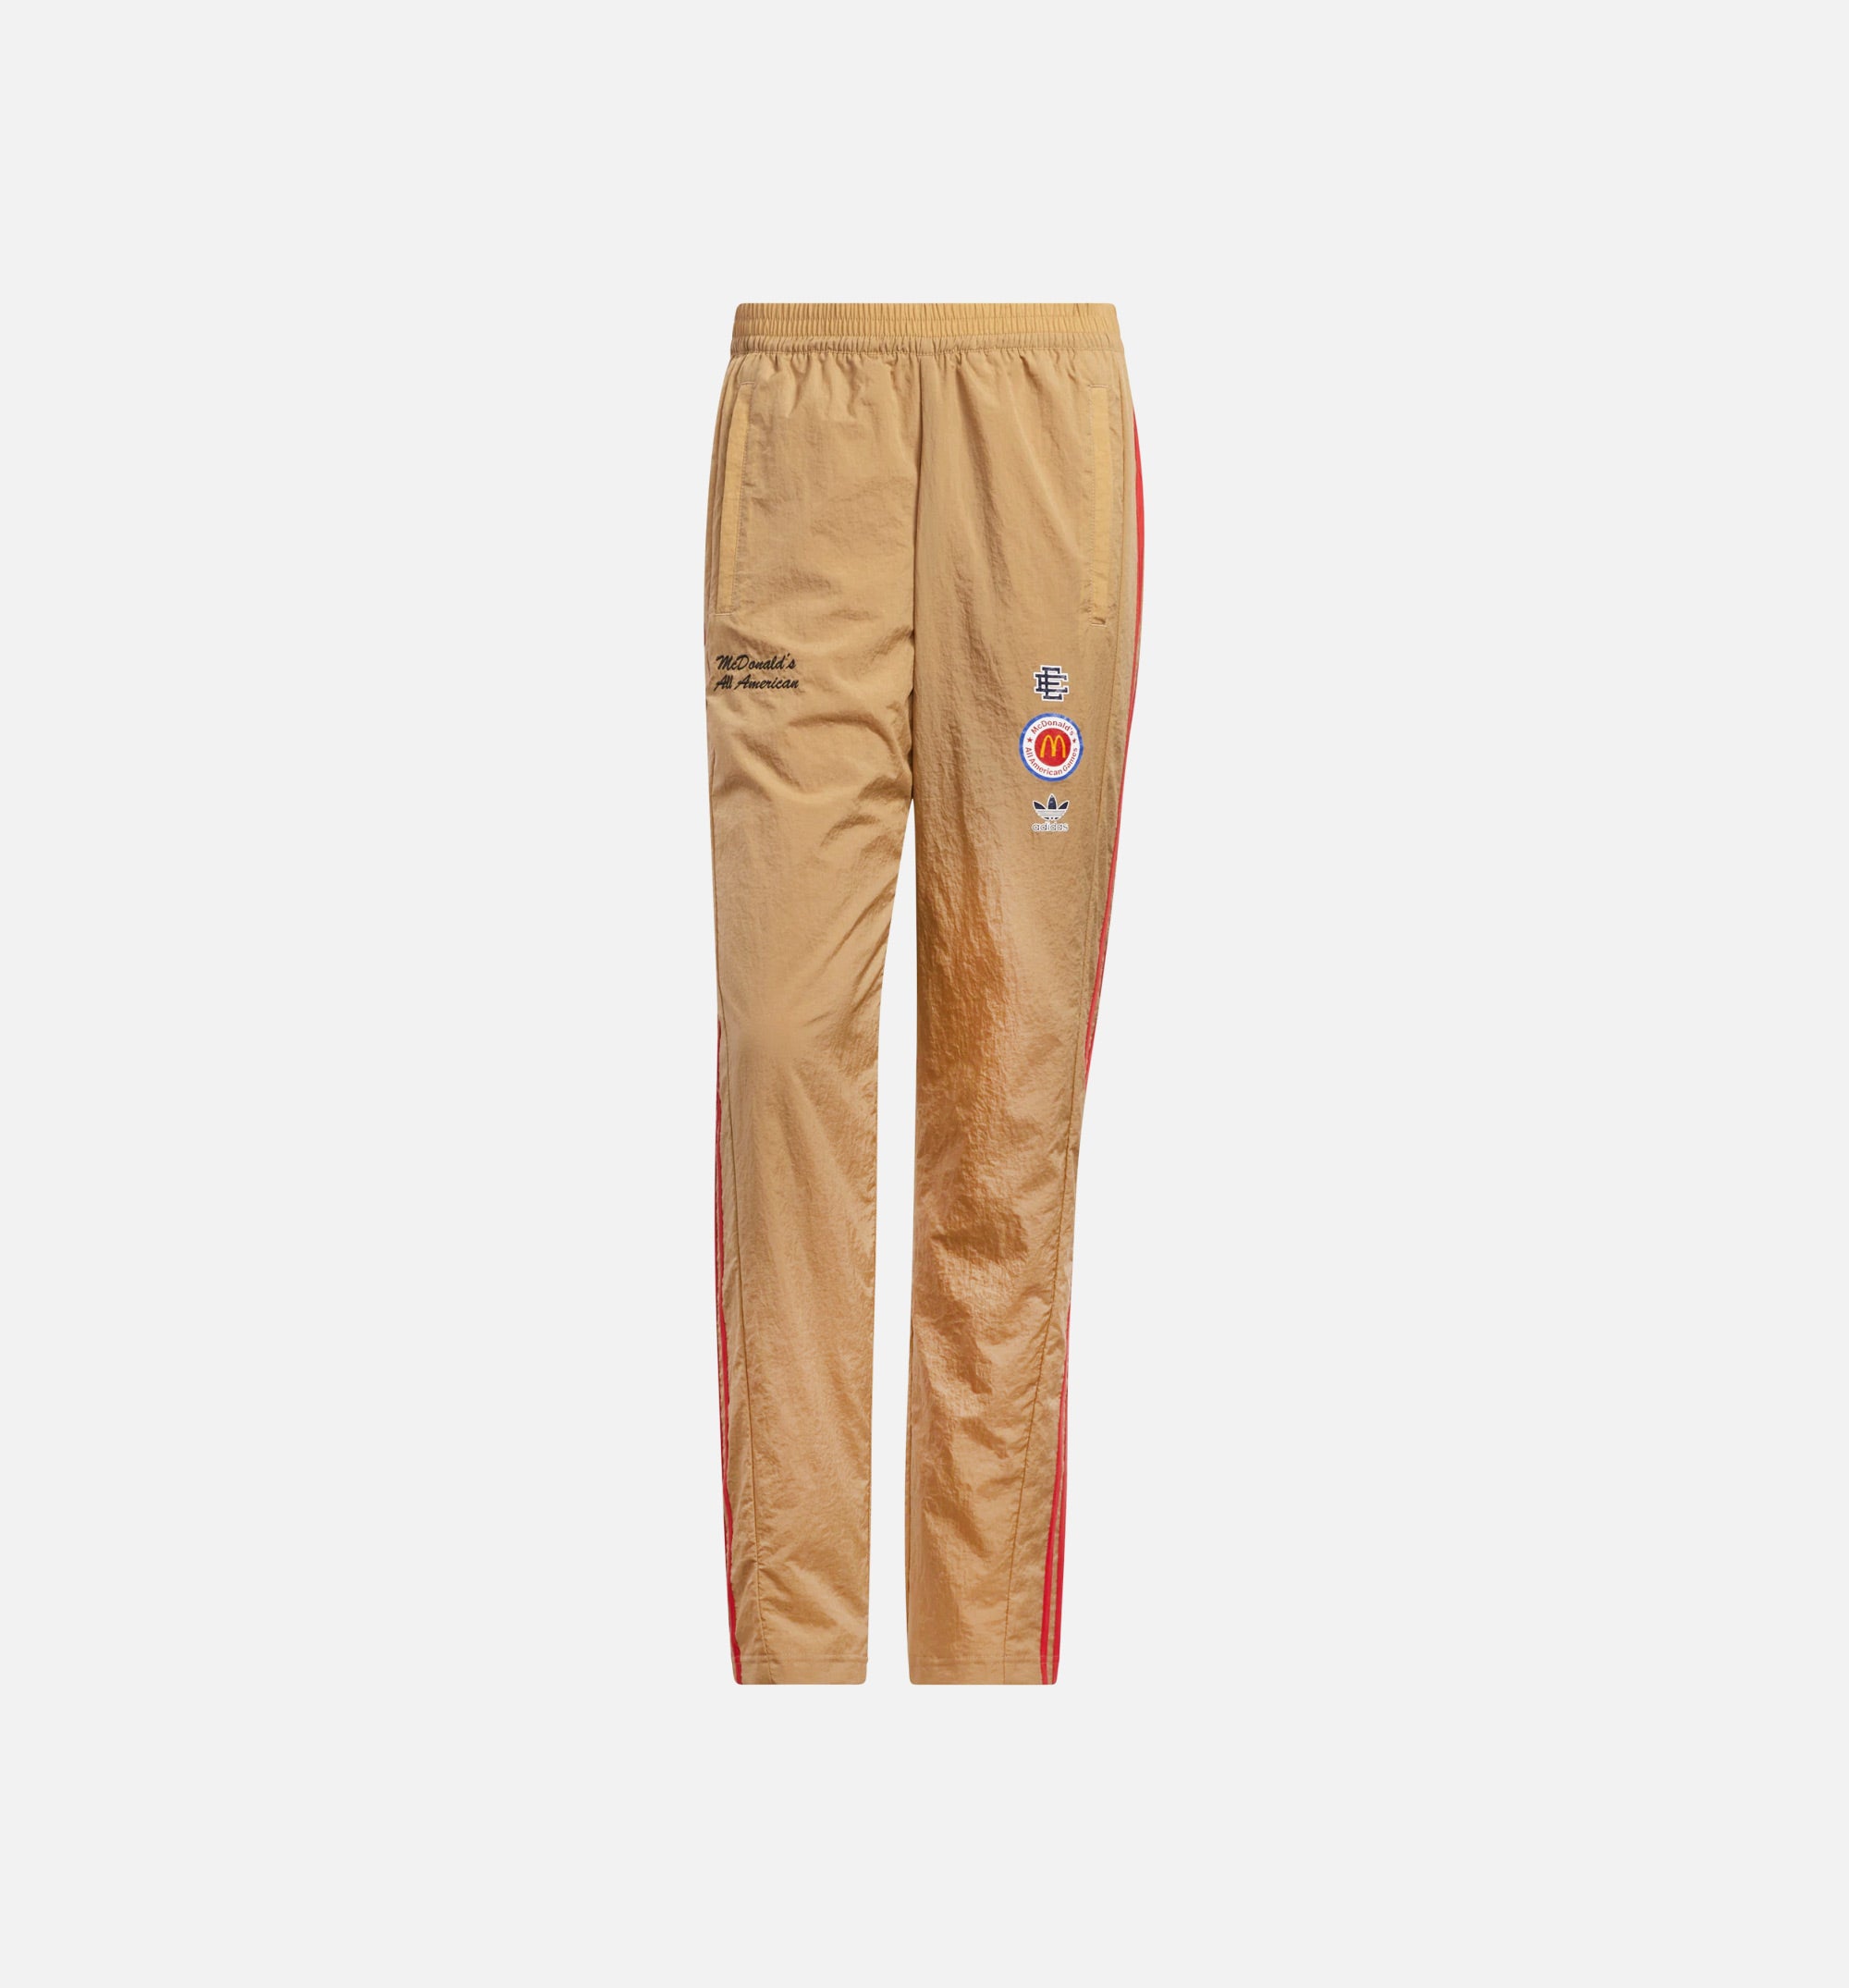 HI5590 Eric Emanuel McDonalds All Snap Pants Mens Pant - Kh – ShopNiceKicks.com